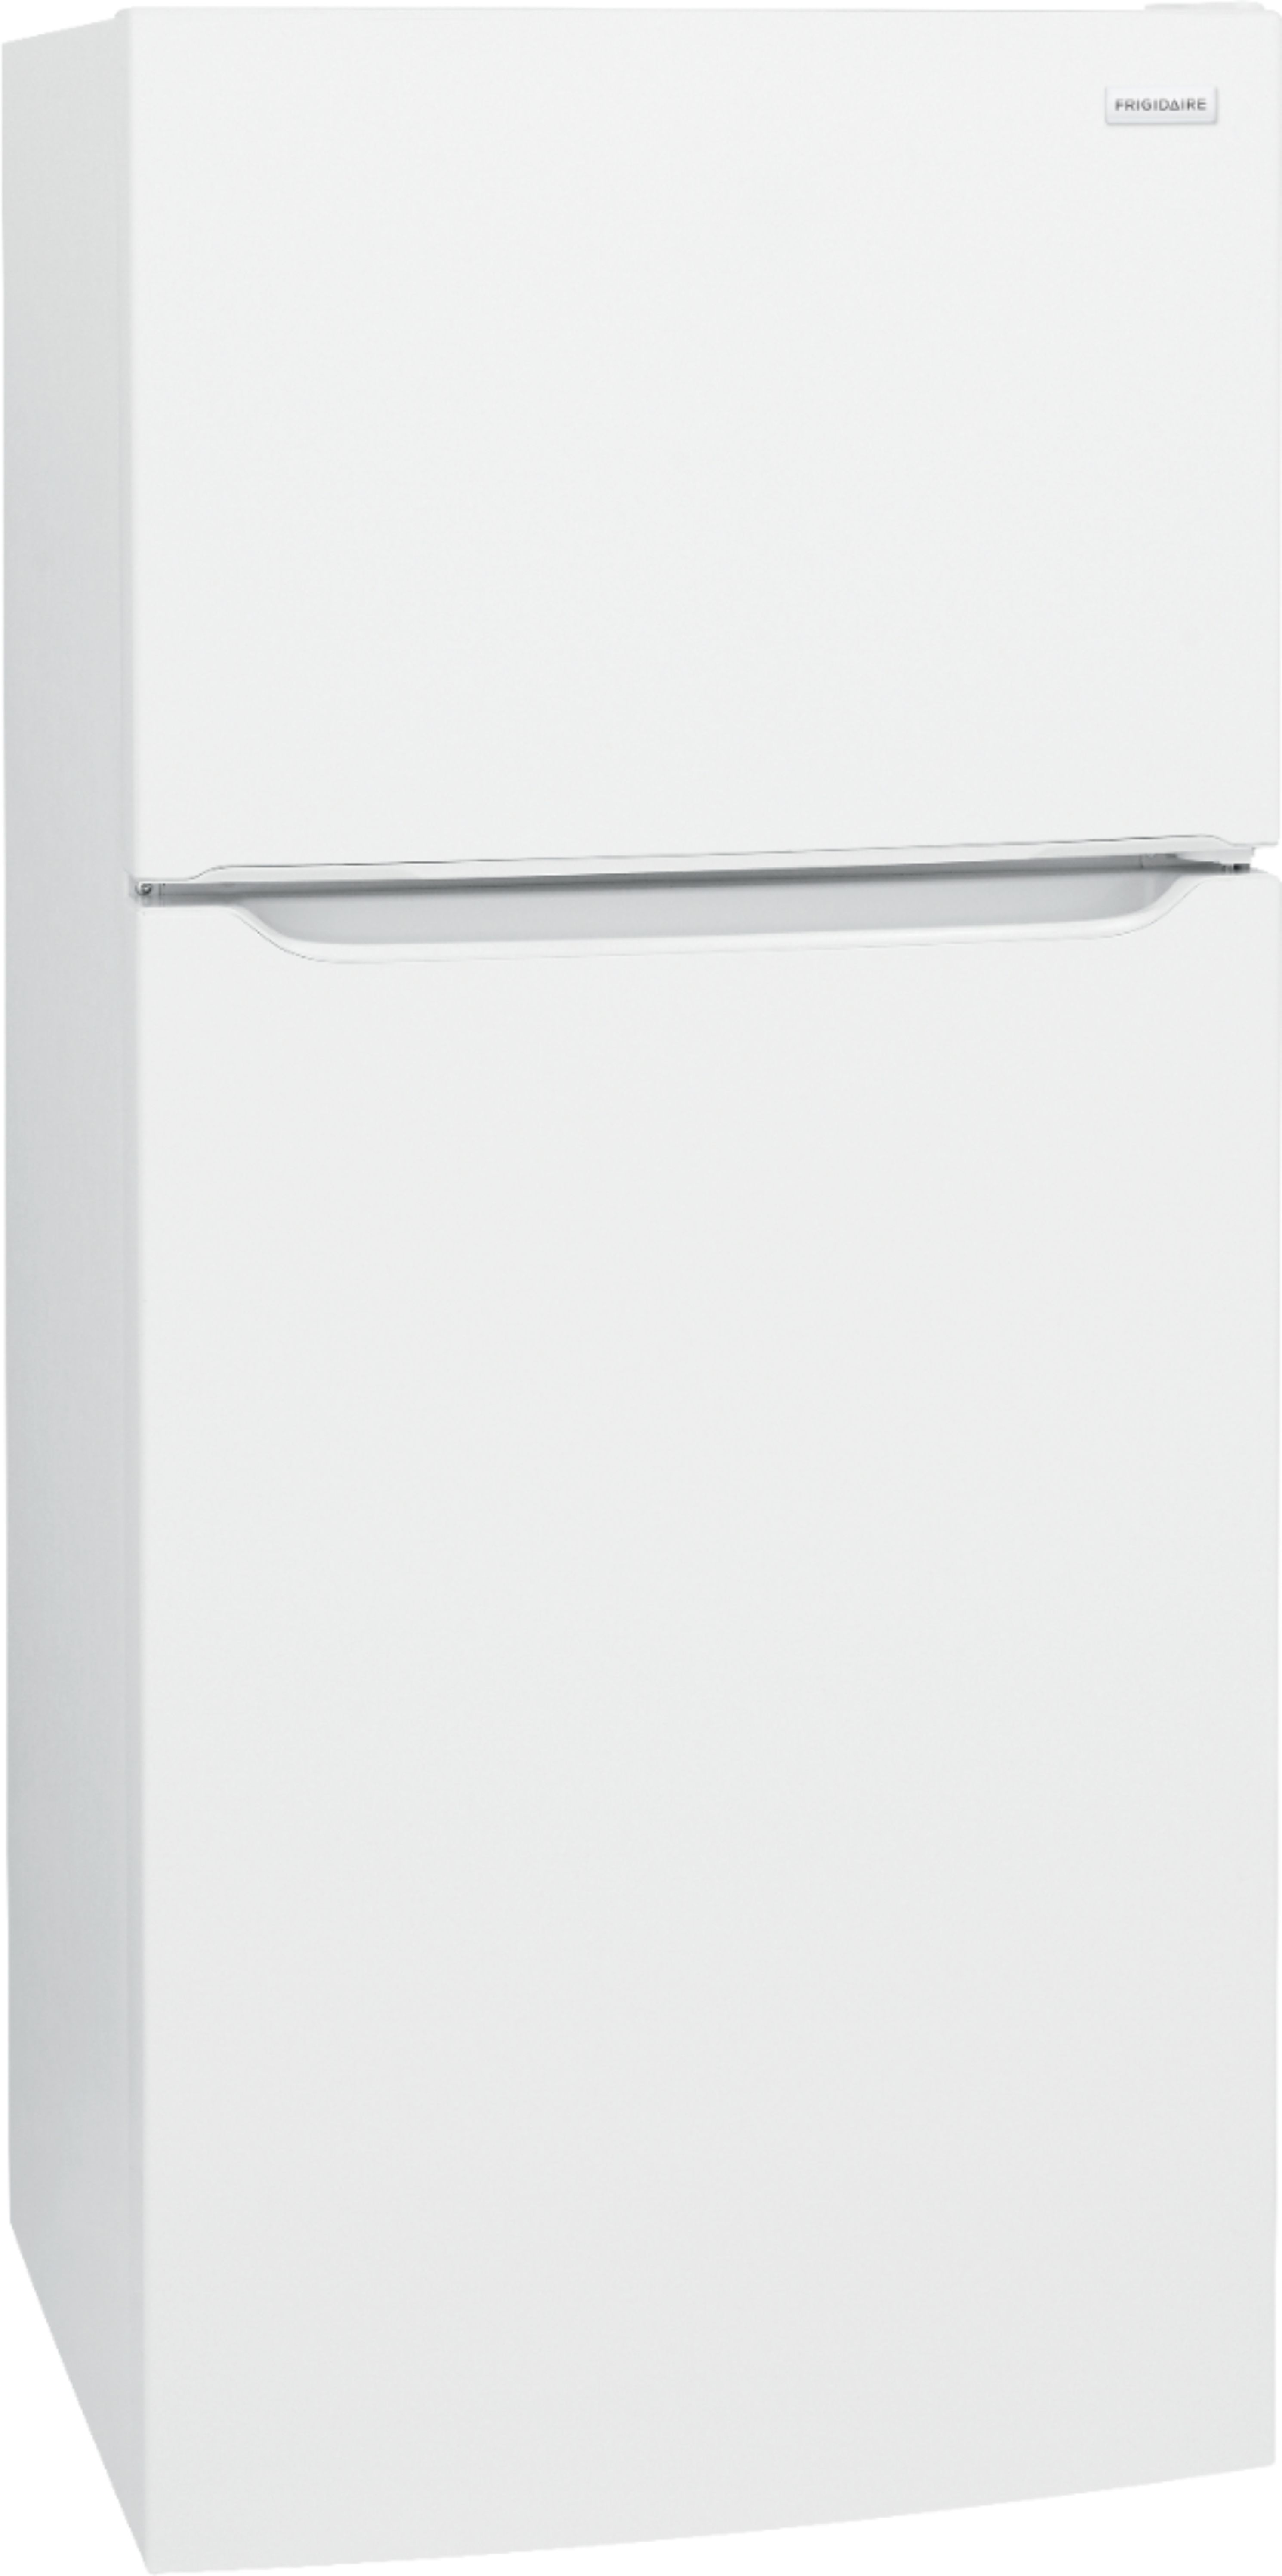 Angle View: Frigidaire - 20 Cu. Ft. Top-Freezer Refrigerator - Black